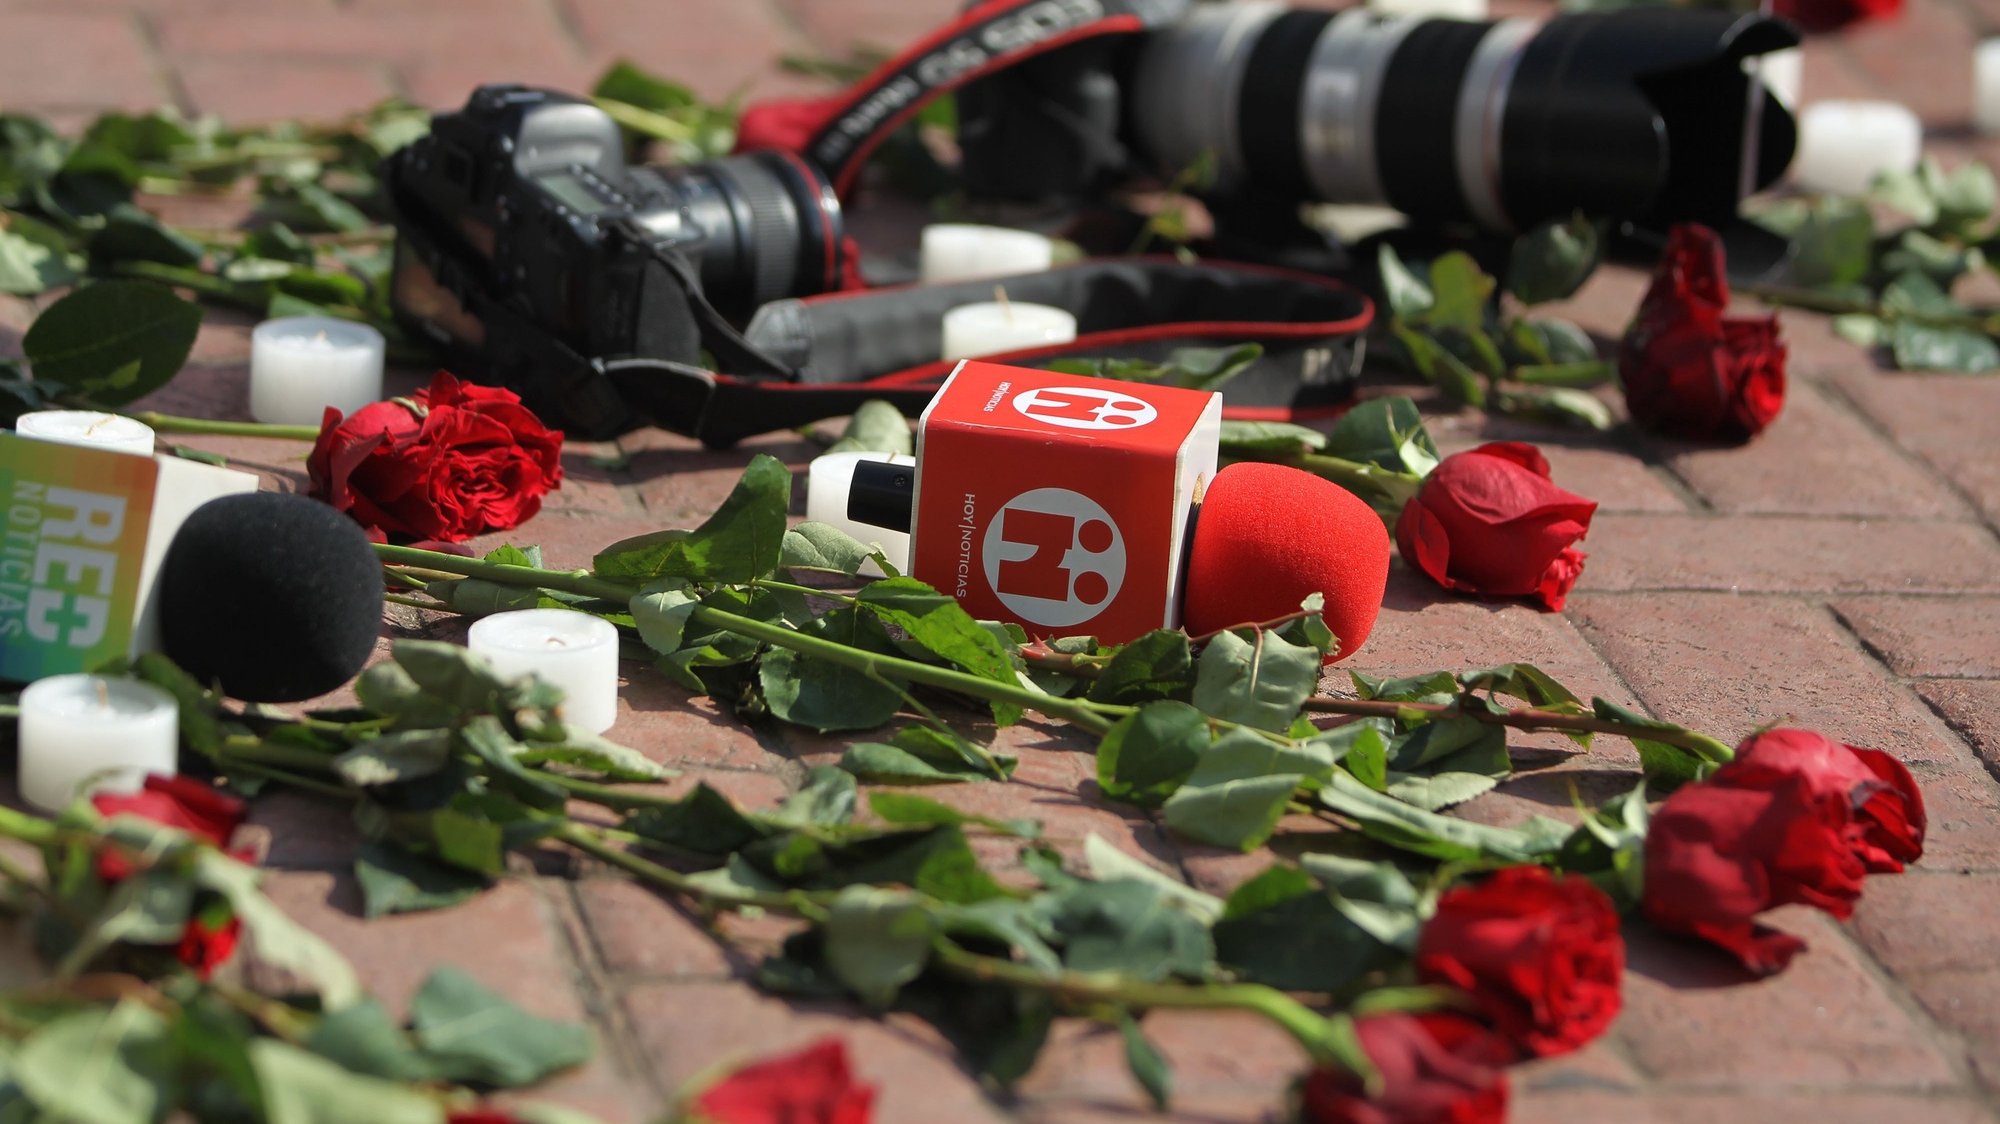 Câmaras e microfones no chão perto de um ramo de rosas para prestar homenagem aos jornalistas assassinados no México